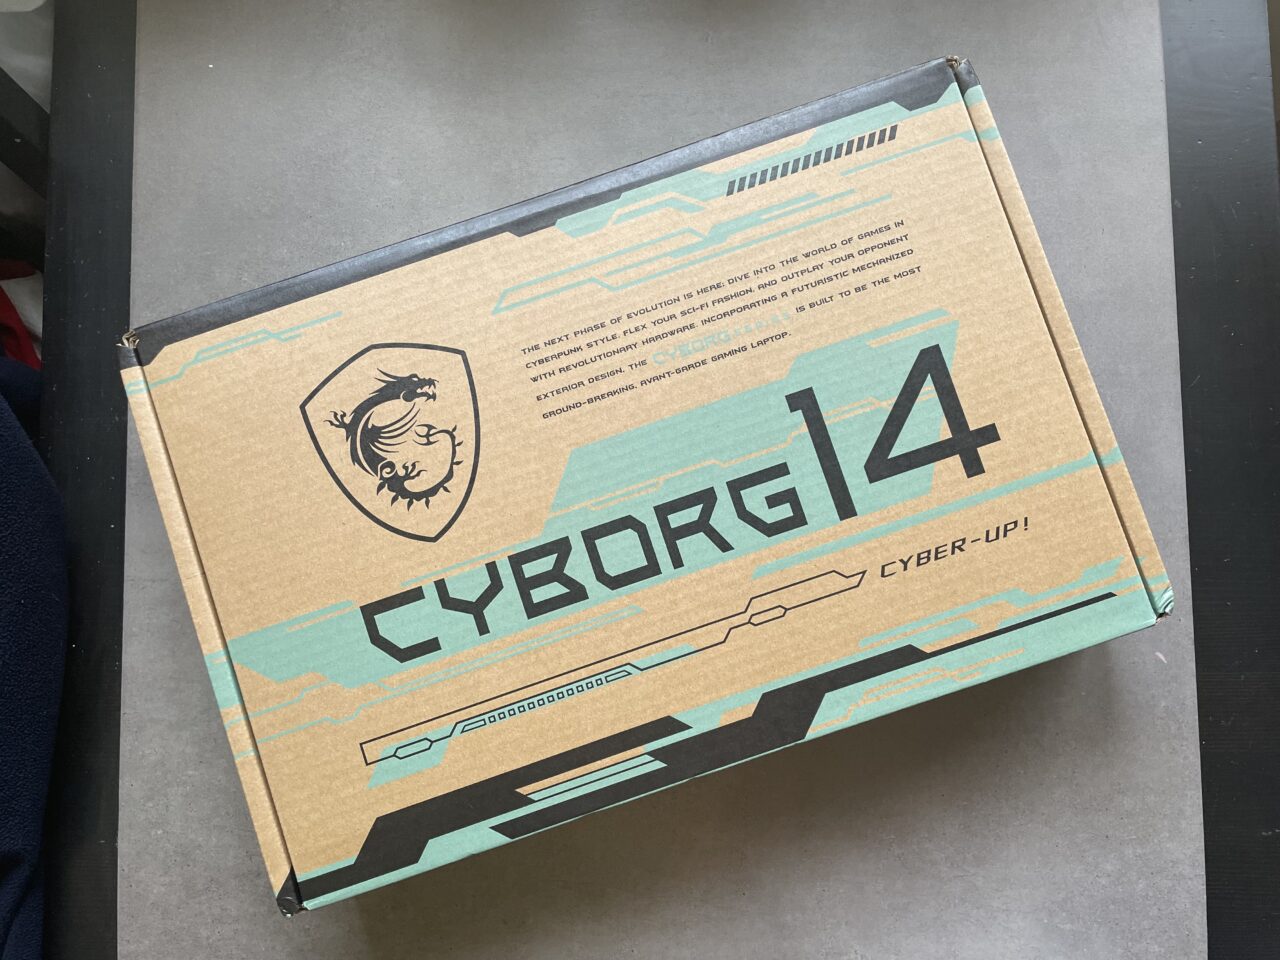 Kartonowe pudełko z napisem "CYBORG 14" i grafiką futurystycznego smoka w herbie oraz hasłem "CYBER-UP!".